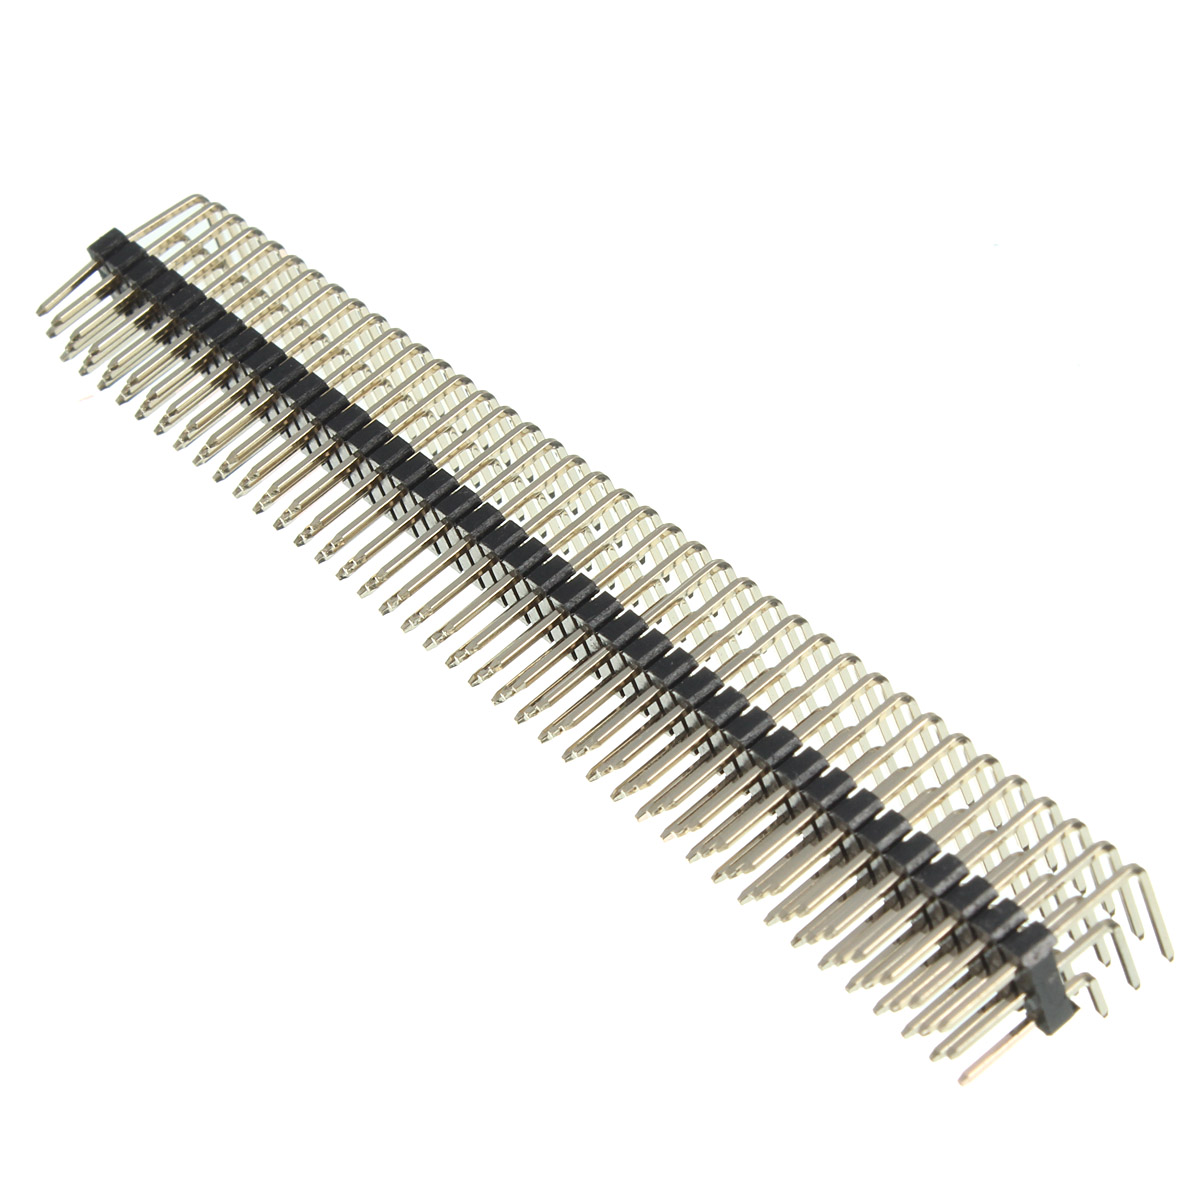 2.54mm 3x40P Male Pins Three Row